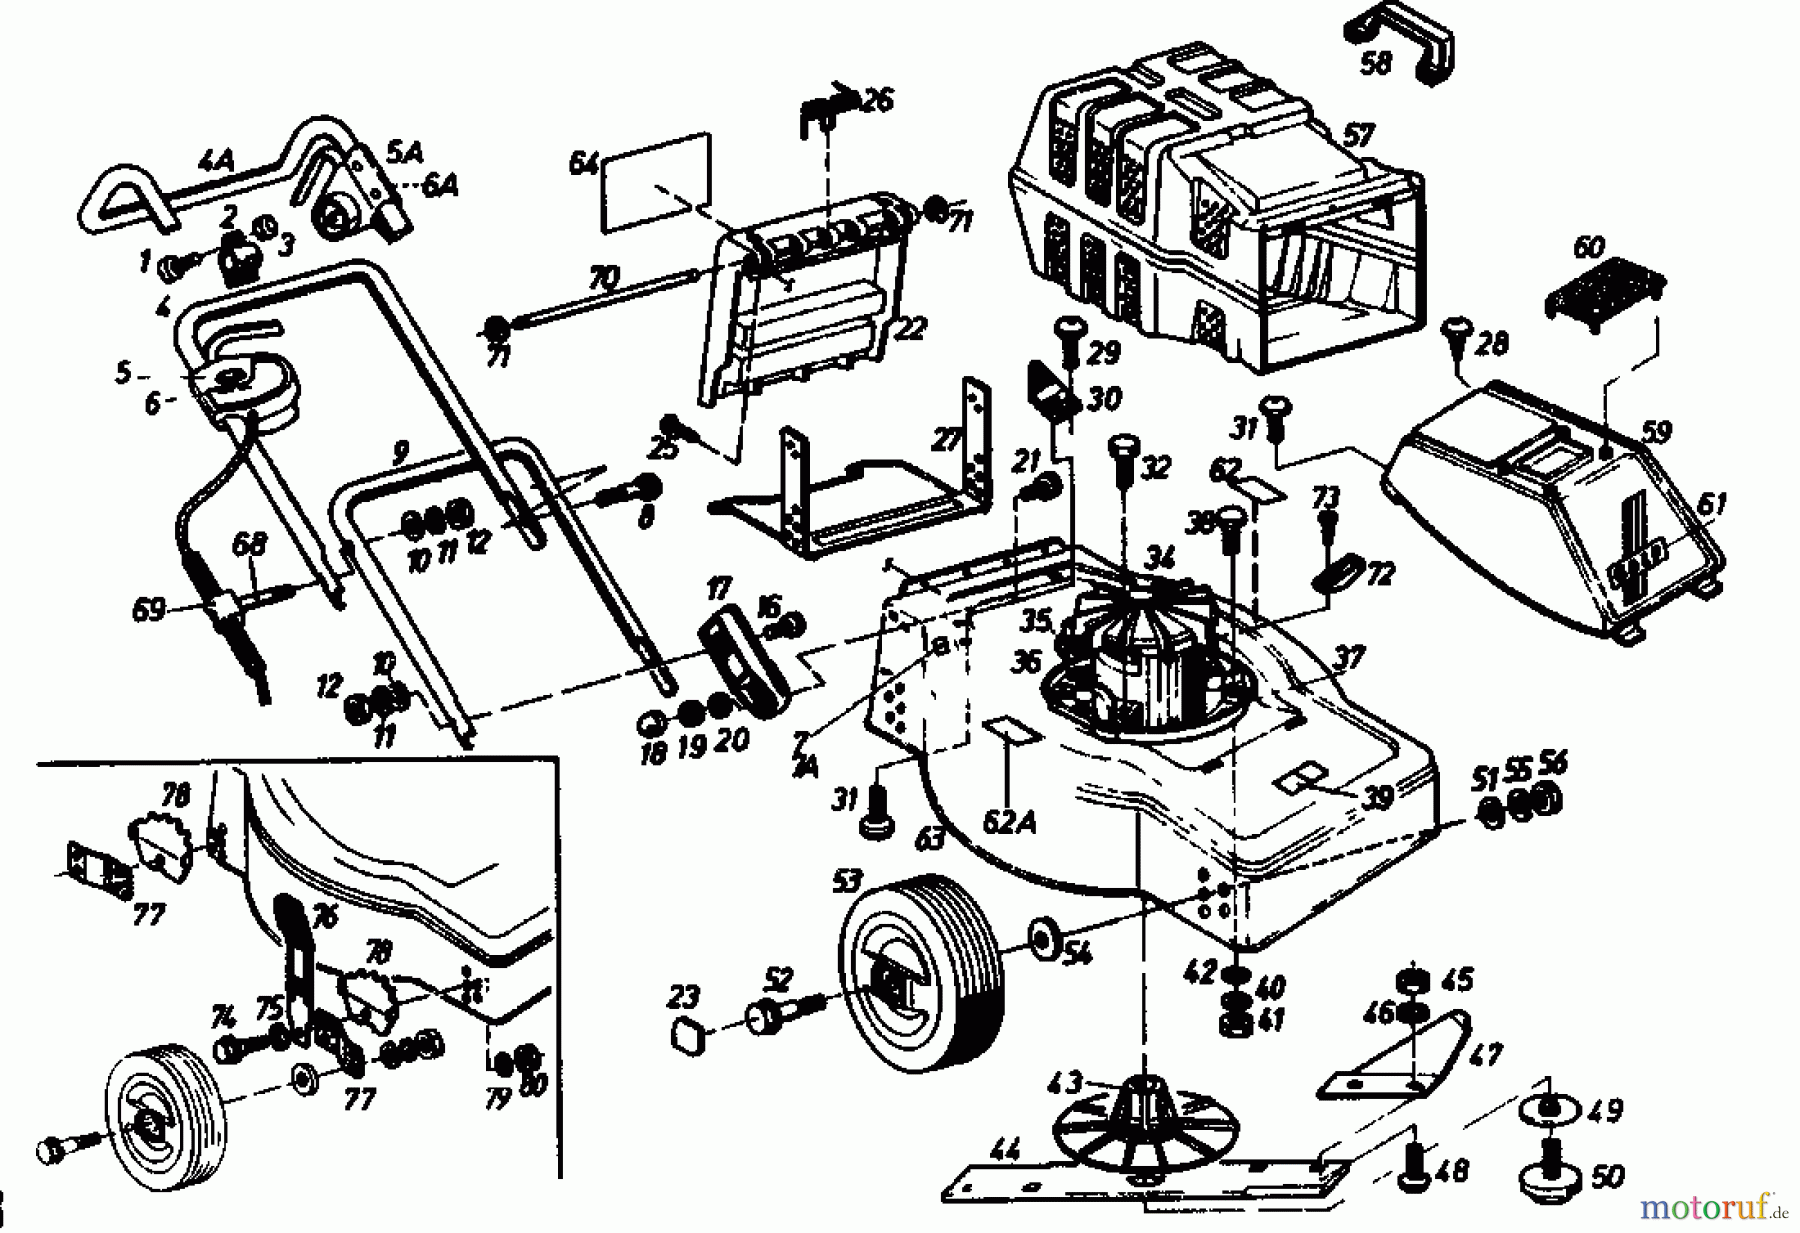  Golf Electric mower 245 EF 02881.02  (1988) Basic machine